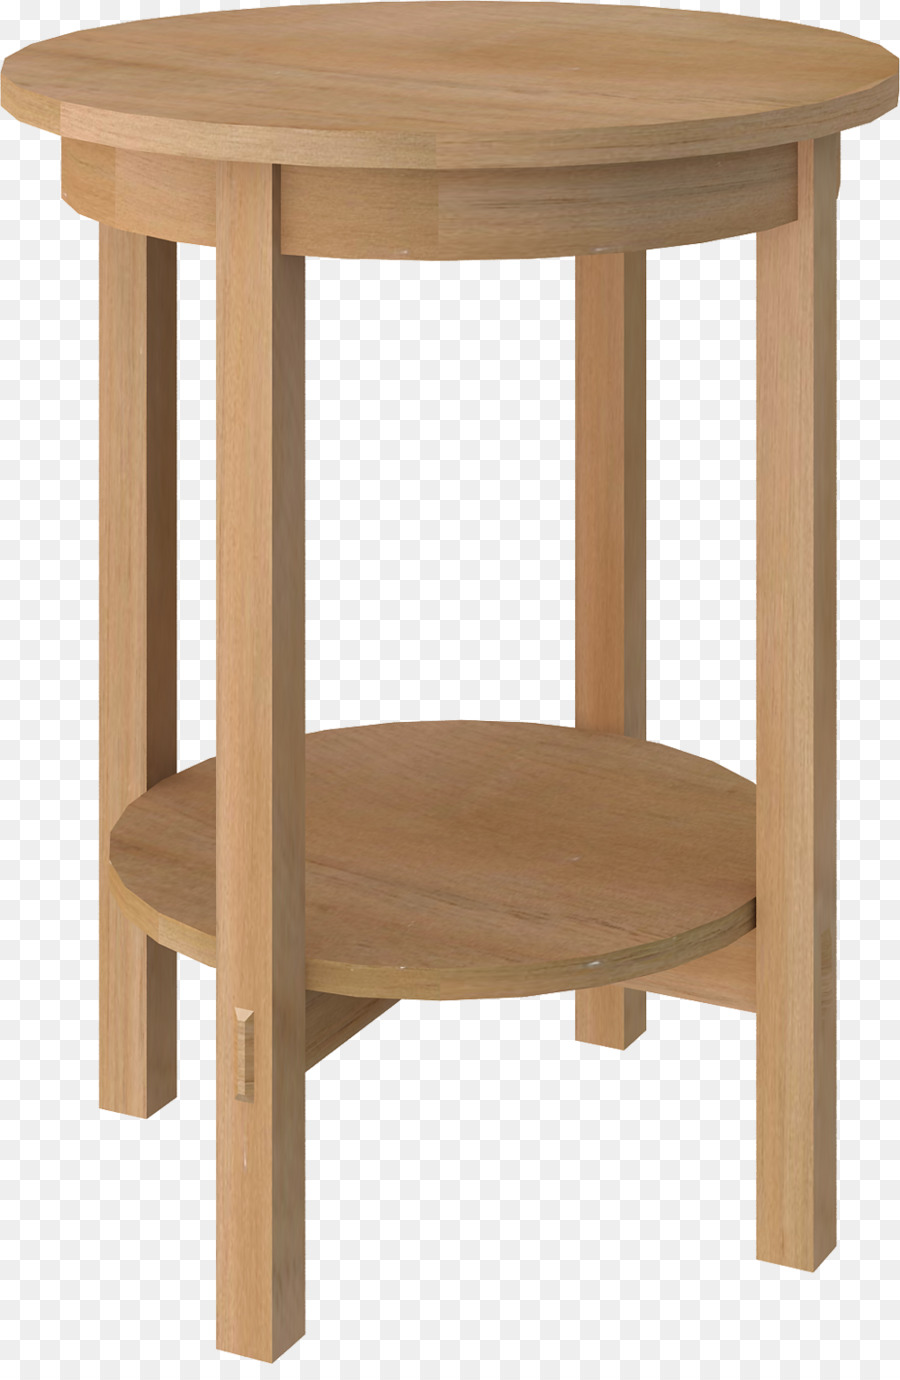 Tisch Gartenmöbel aus Hartholz Regal - ein Runder Tisch mit vier Beinen